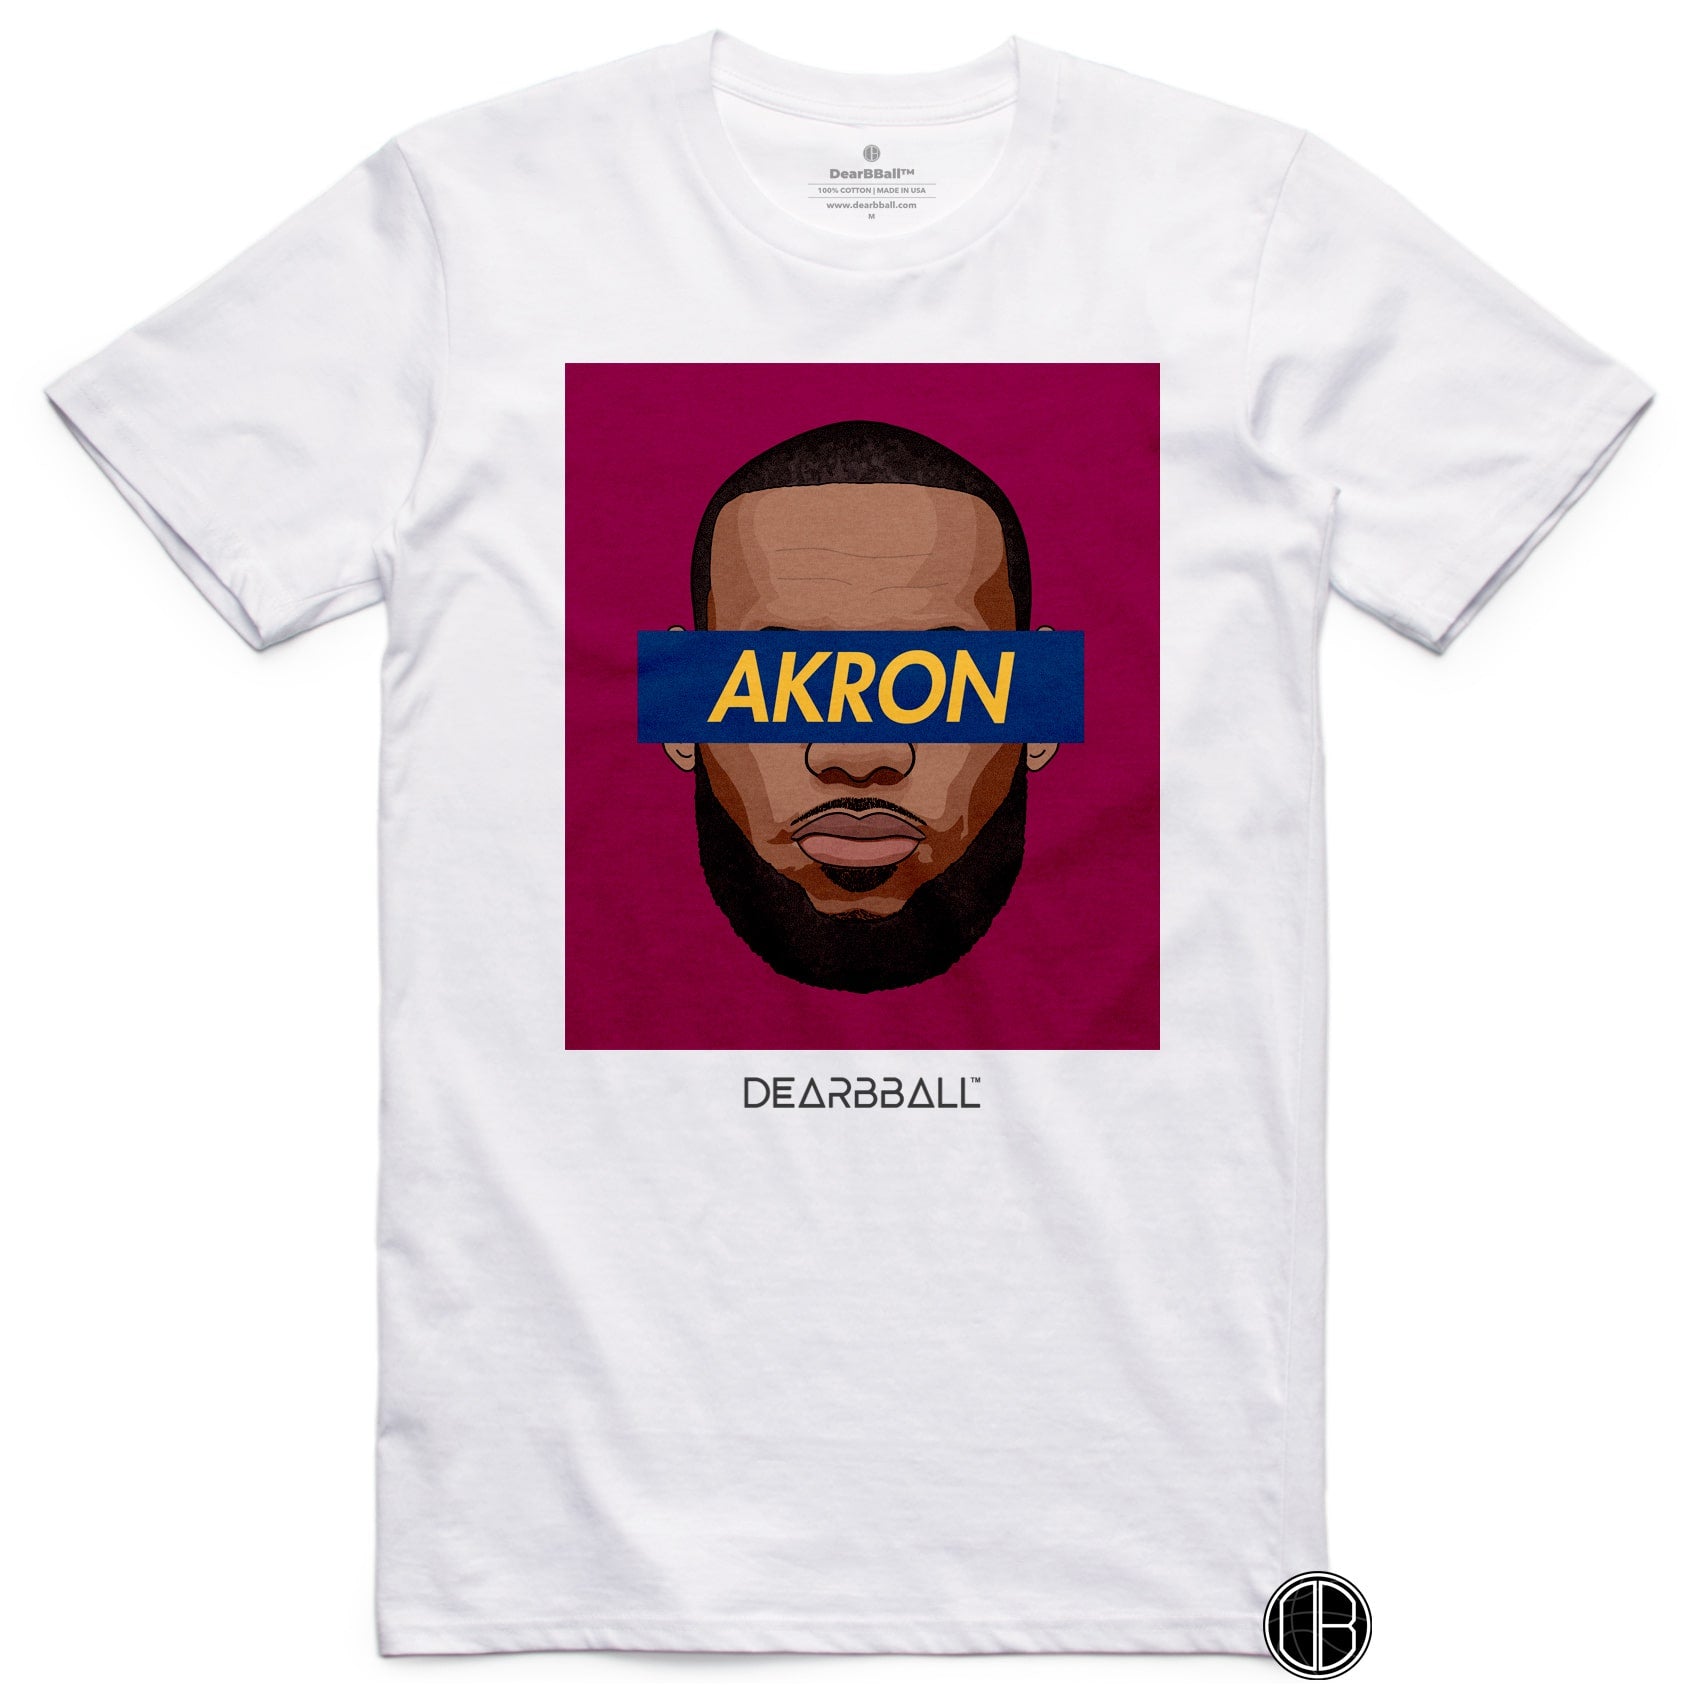 Camiseta DearBBall - Edición King AKRON